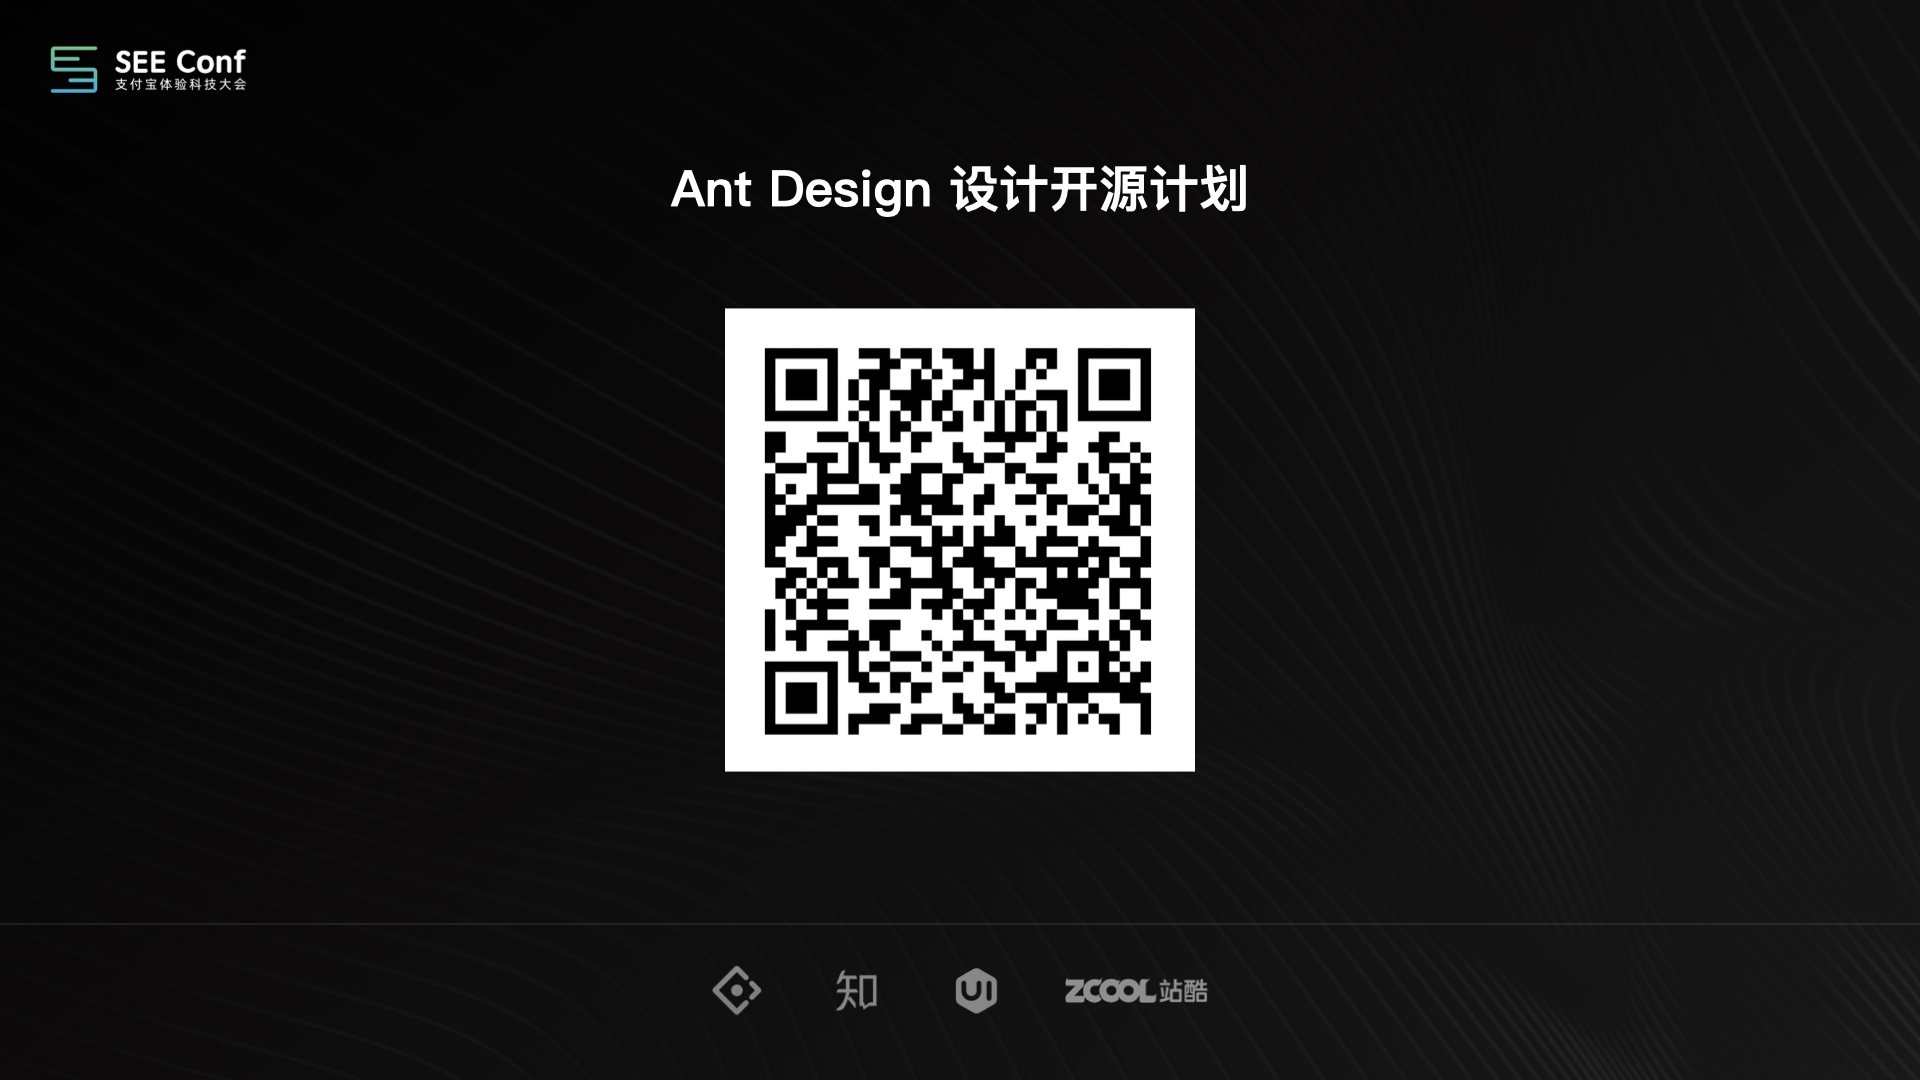 Ant Design 设计工程化0109正式版.087.jpeg